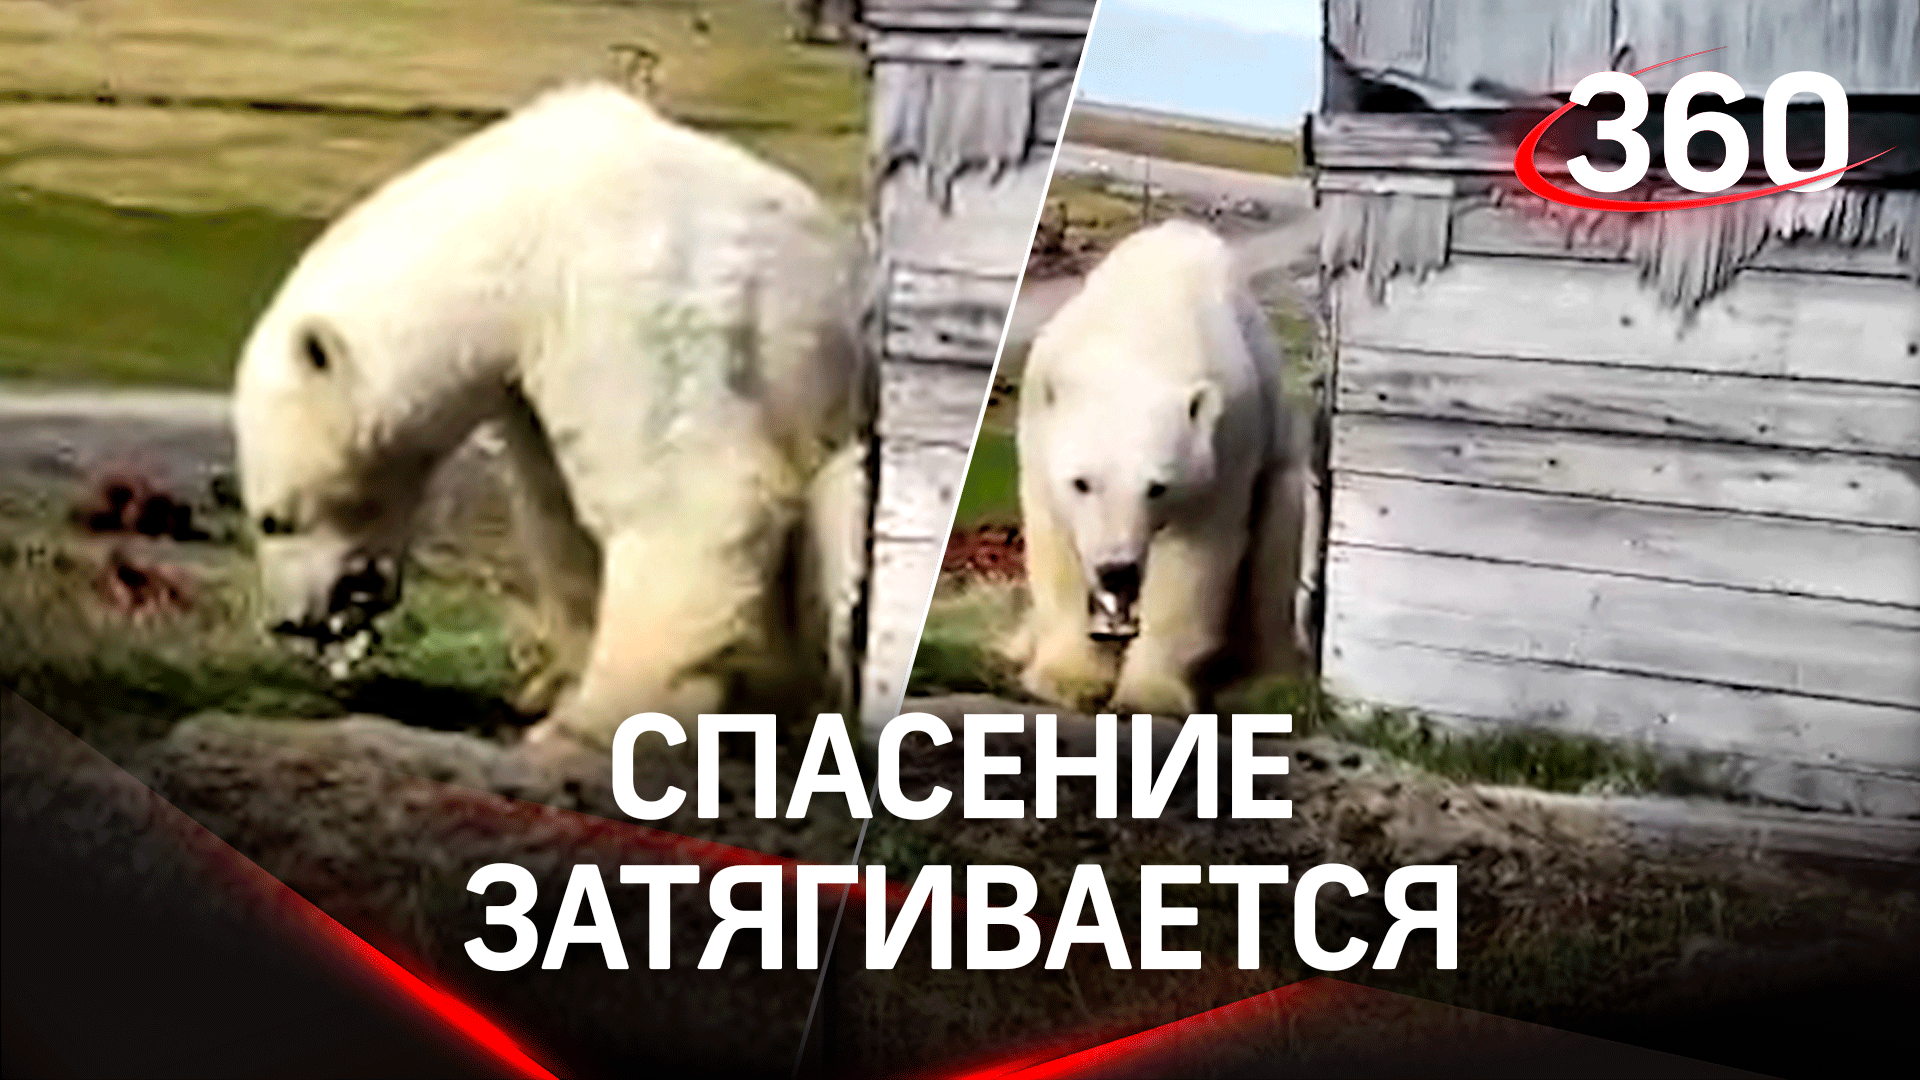 Спасению медведя с банкой во рту мешает погода: московские ветеринары застряли в аэропорту Норильска